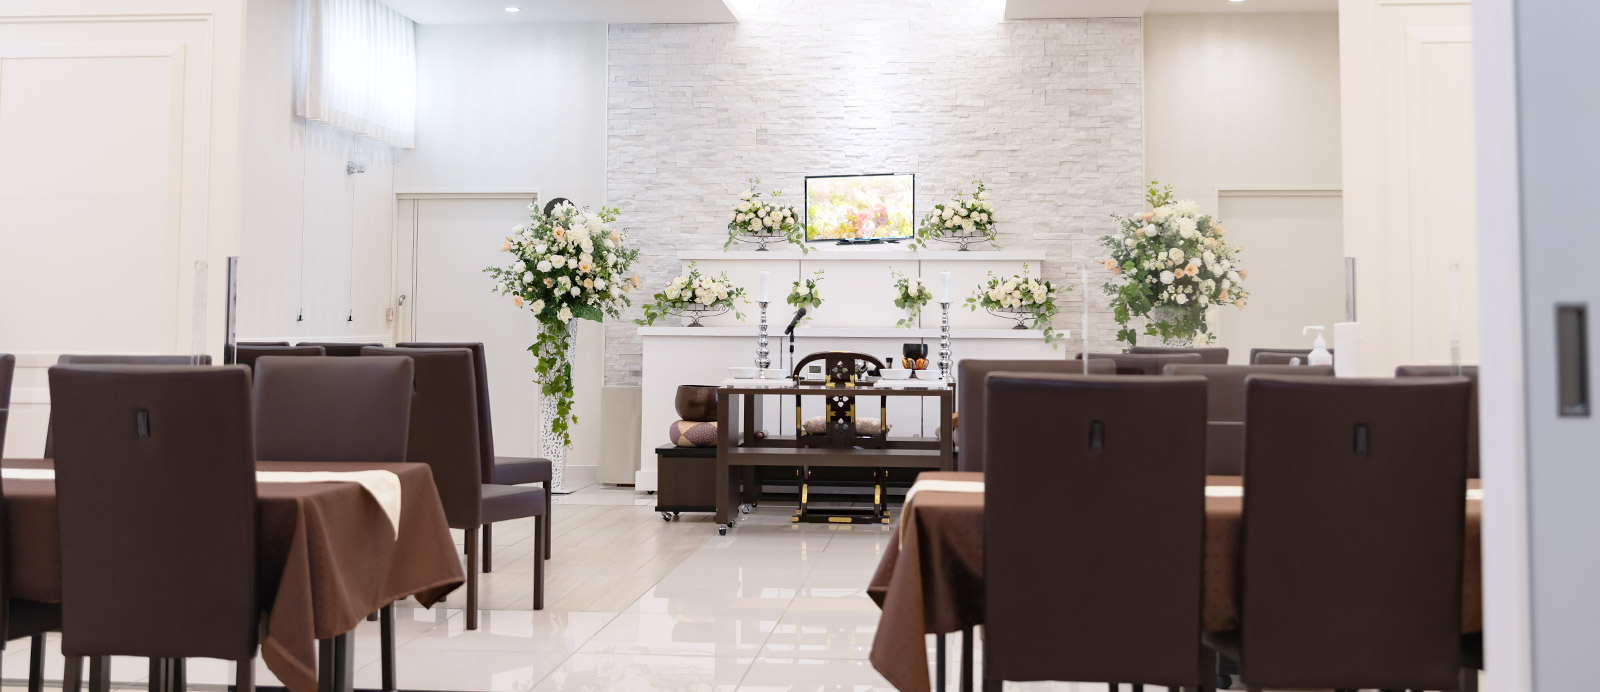 南原ホールで葬儀・葬式が9.5万円からできる家族葬の仙和のホールの内装イメージ